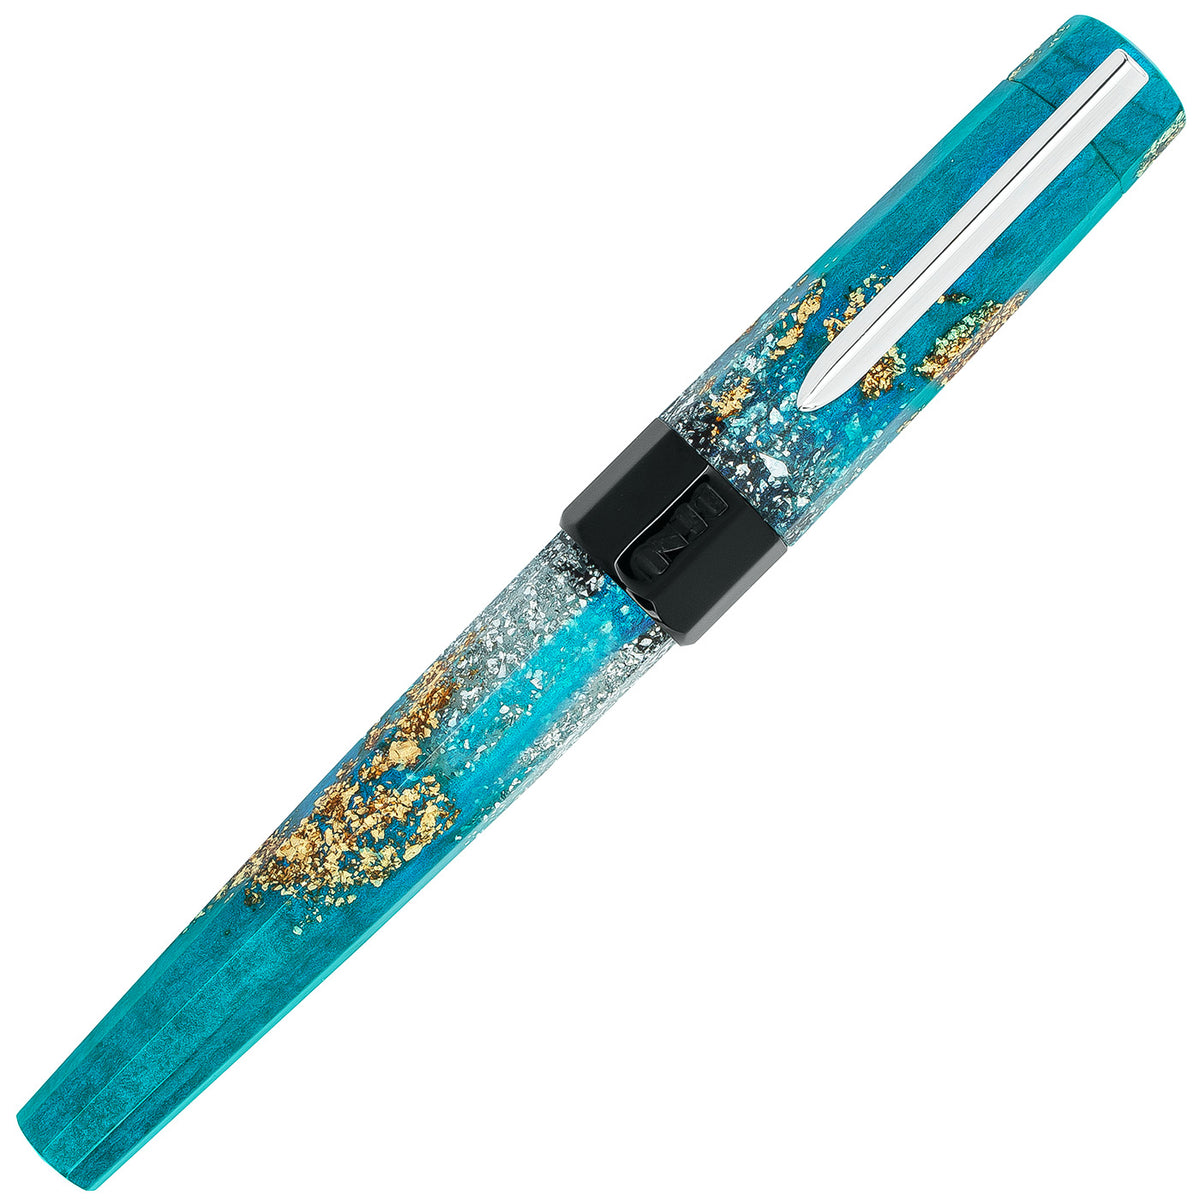 BENU Euphoria Collection Bora Bora Fountain Pen